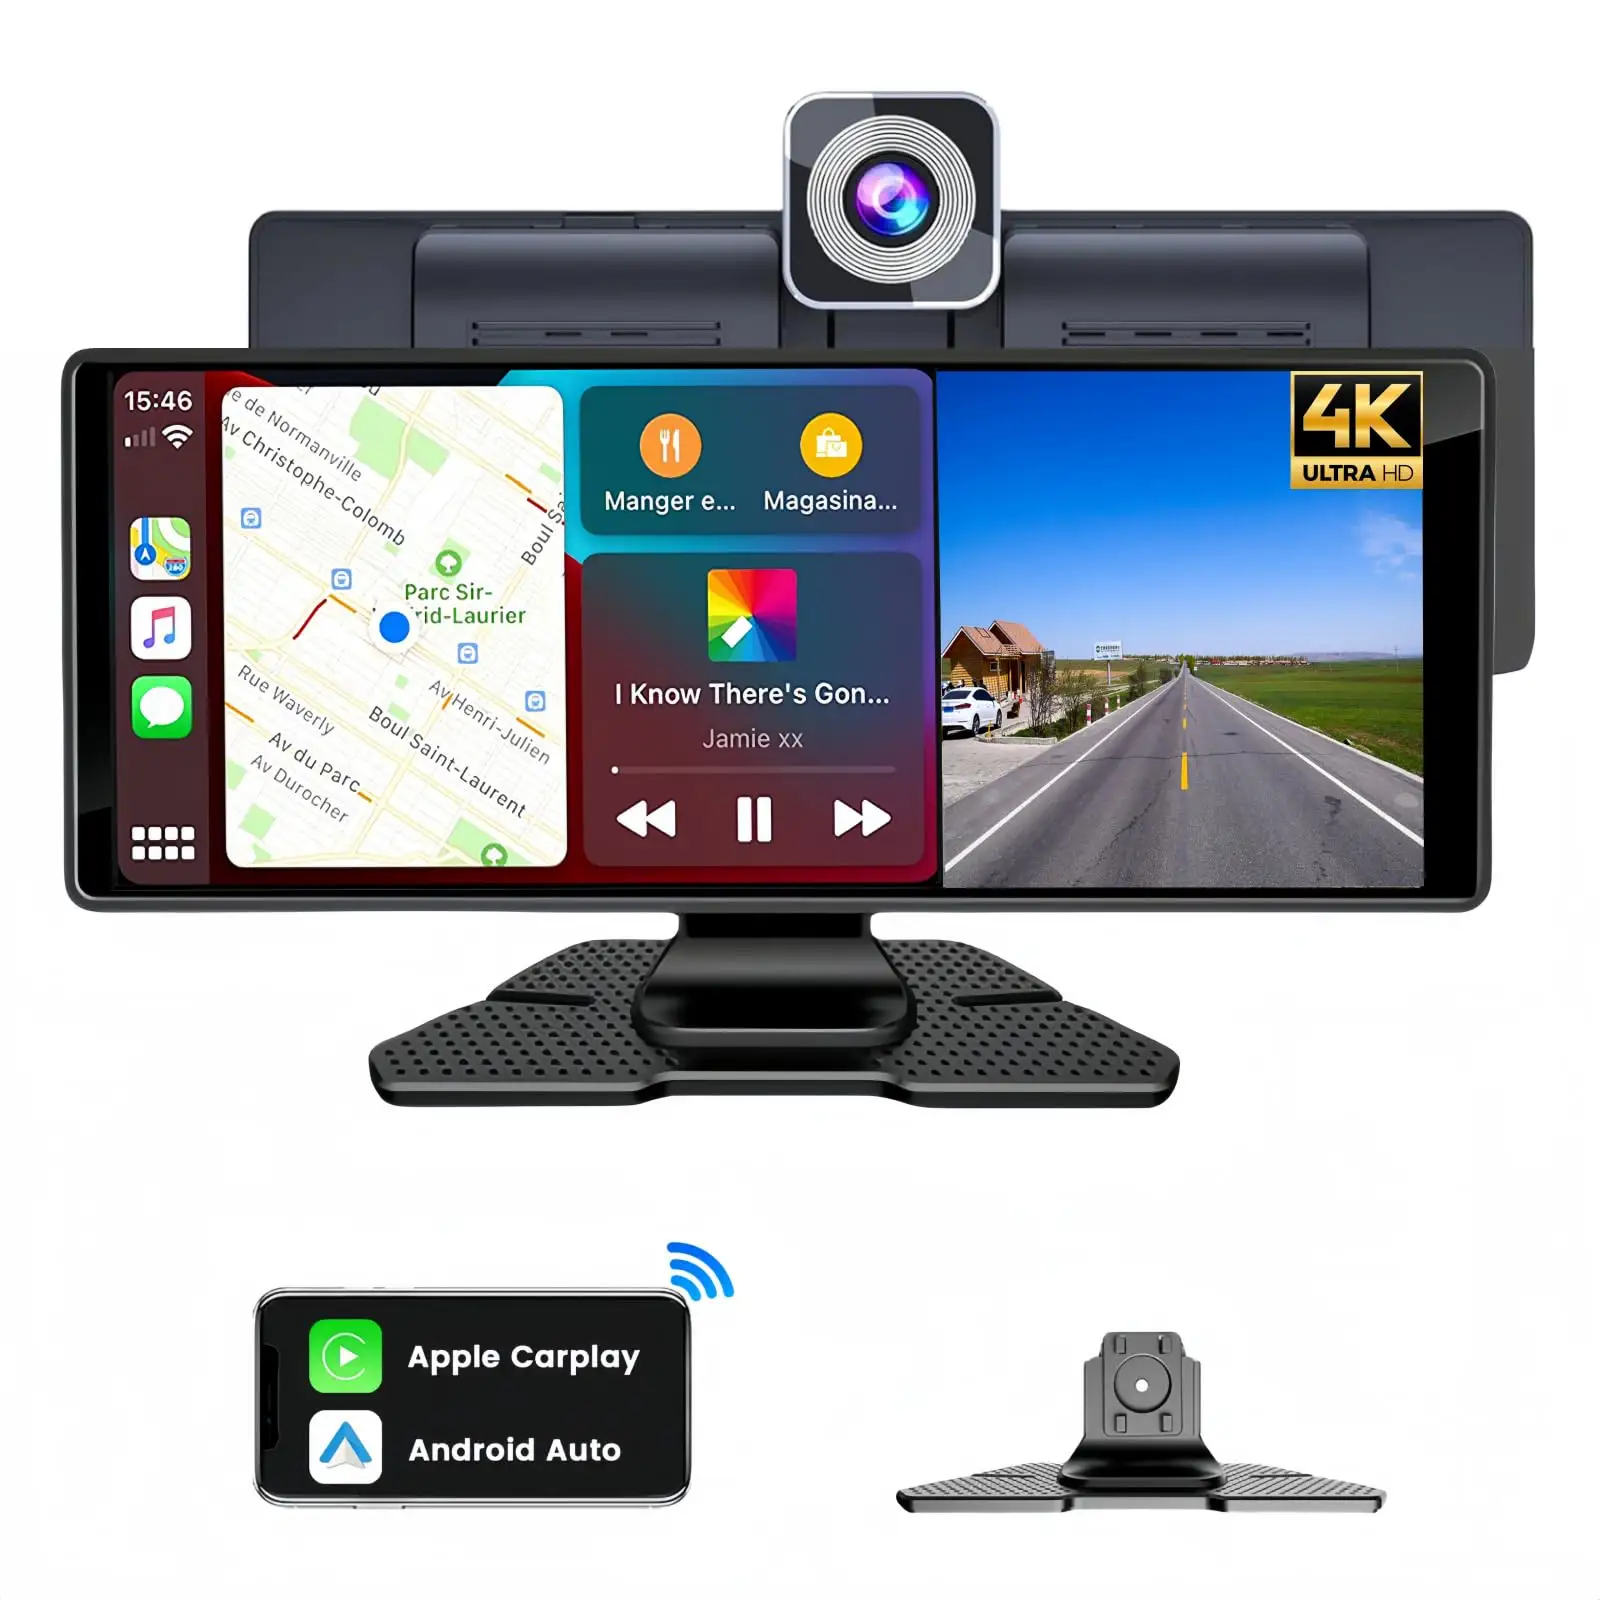 10.26 इंच यूनिवर्सल टच कारप्ले स्क्रीन कैमरा के साथ वायरलेस कारप्ले डैशकैम पोर्टेबल स्क्रीन कार ऐप्पल कारप्ले के लिए खेलें